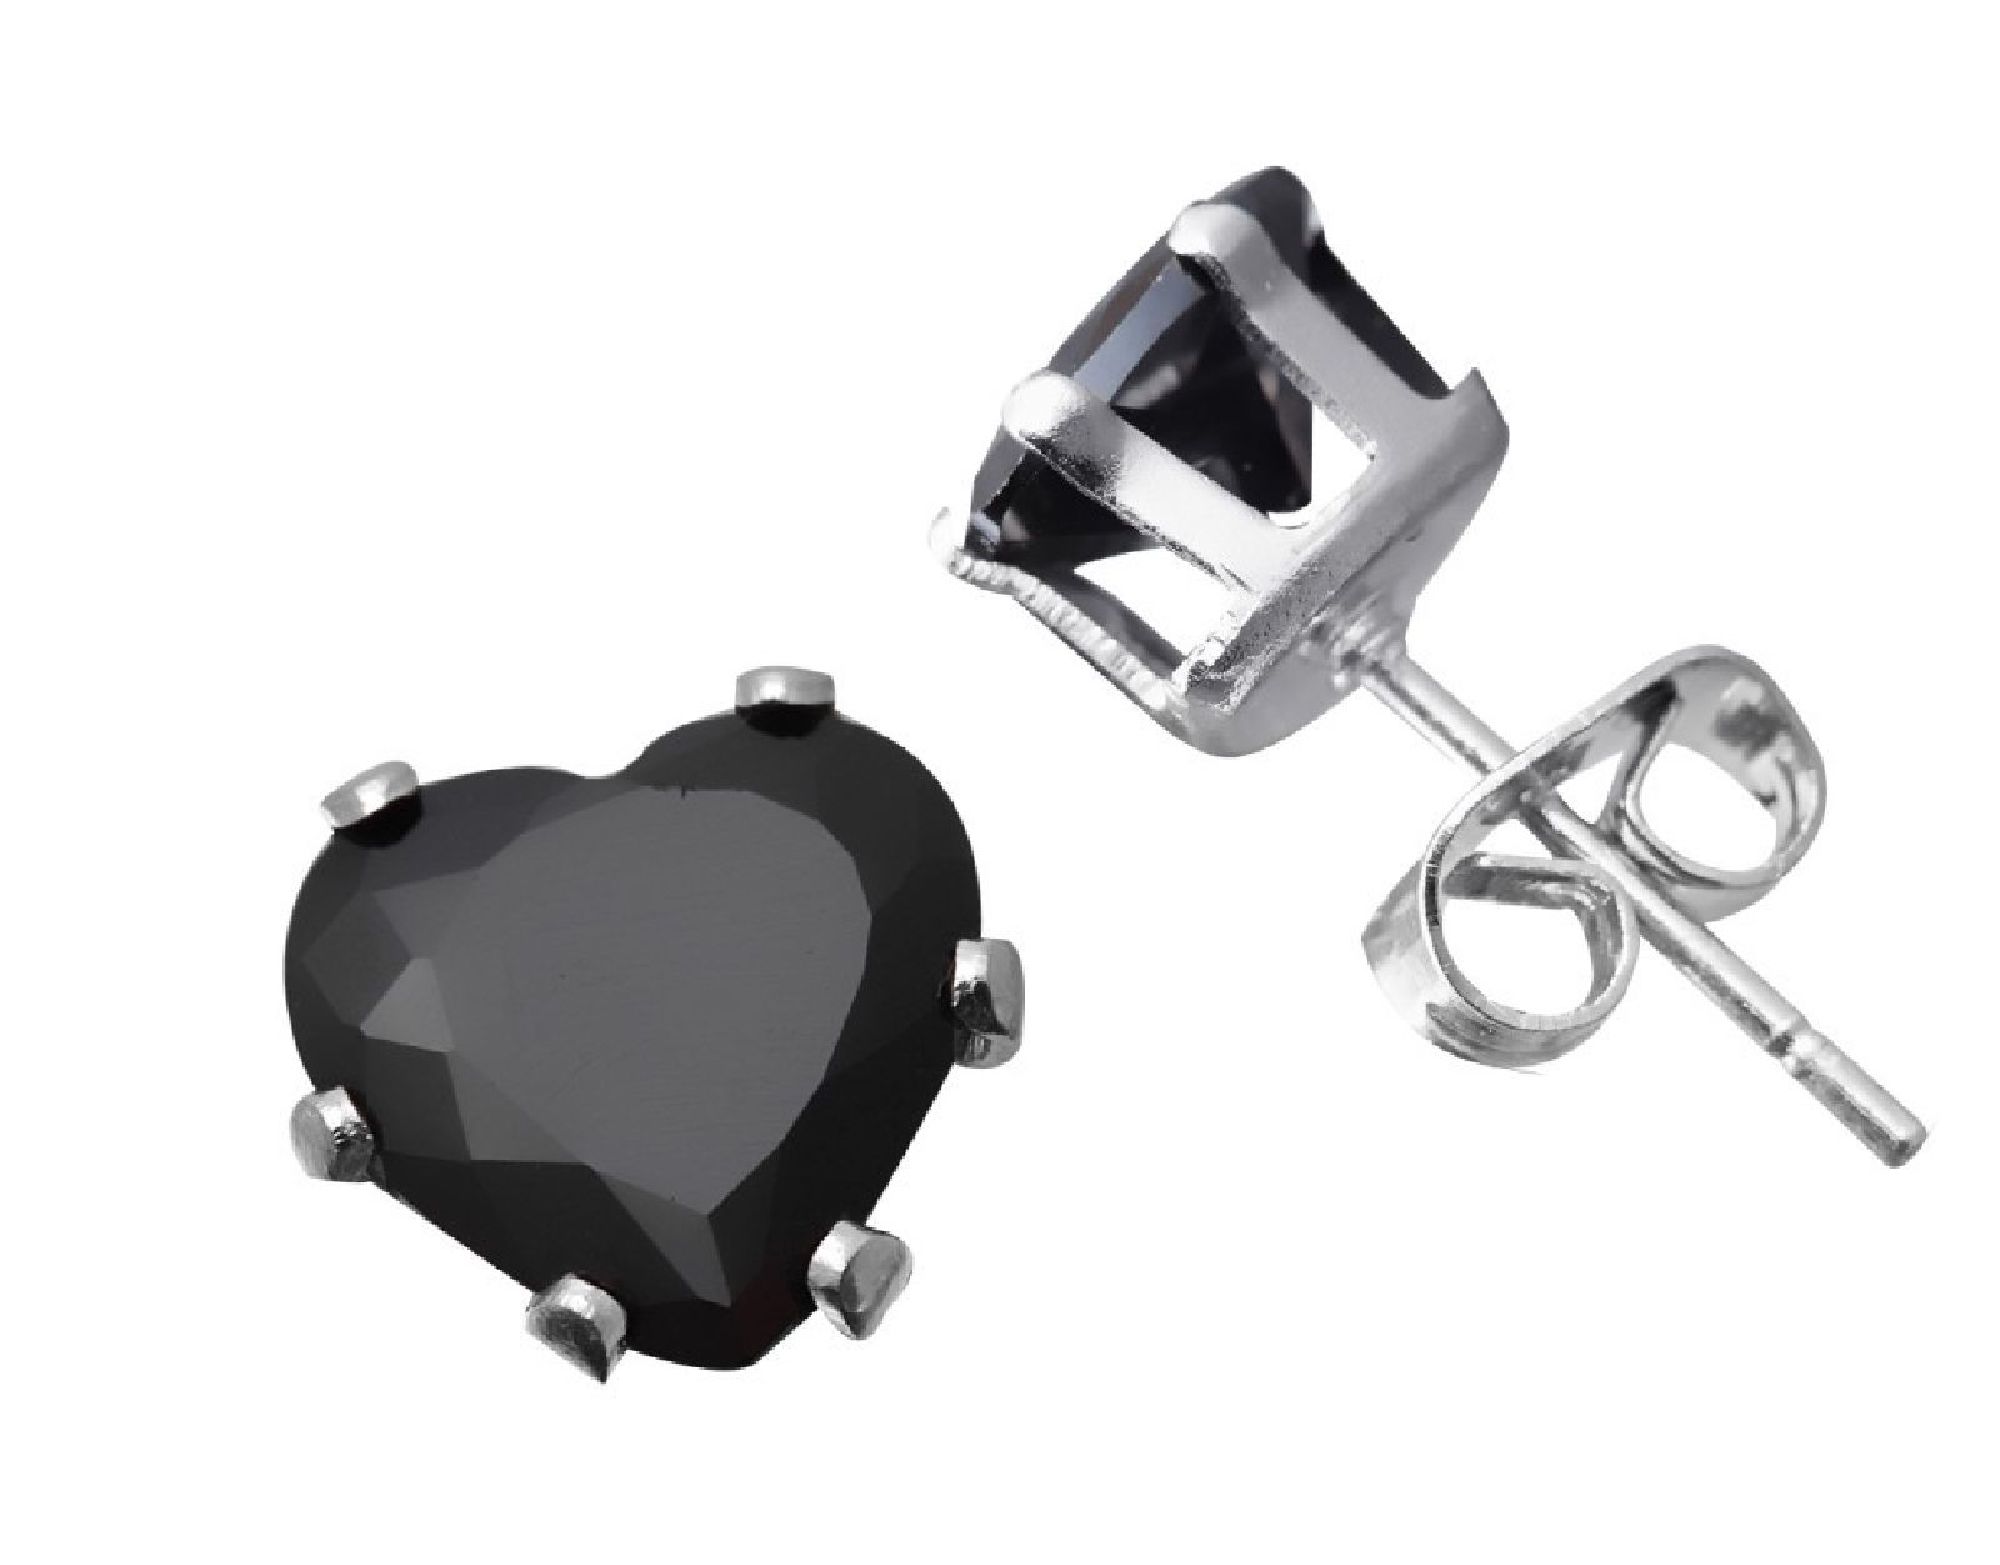 ParisJewelry.com 4 Carat Heart Shape Black Diamond manmade Stud Earrings for Men in Sterling Silver Designed in France